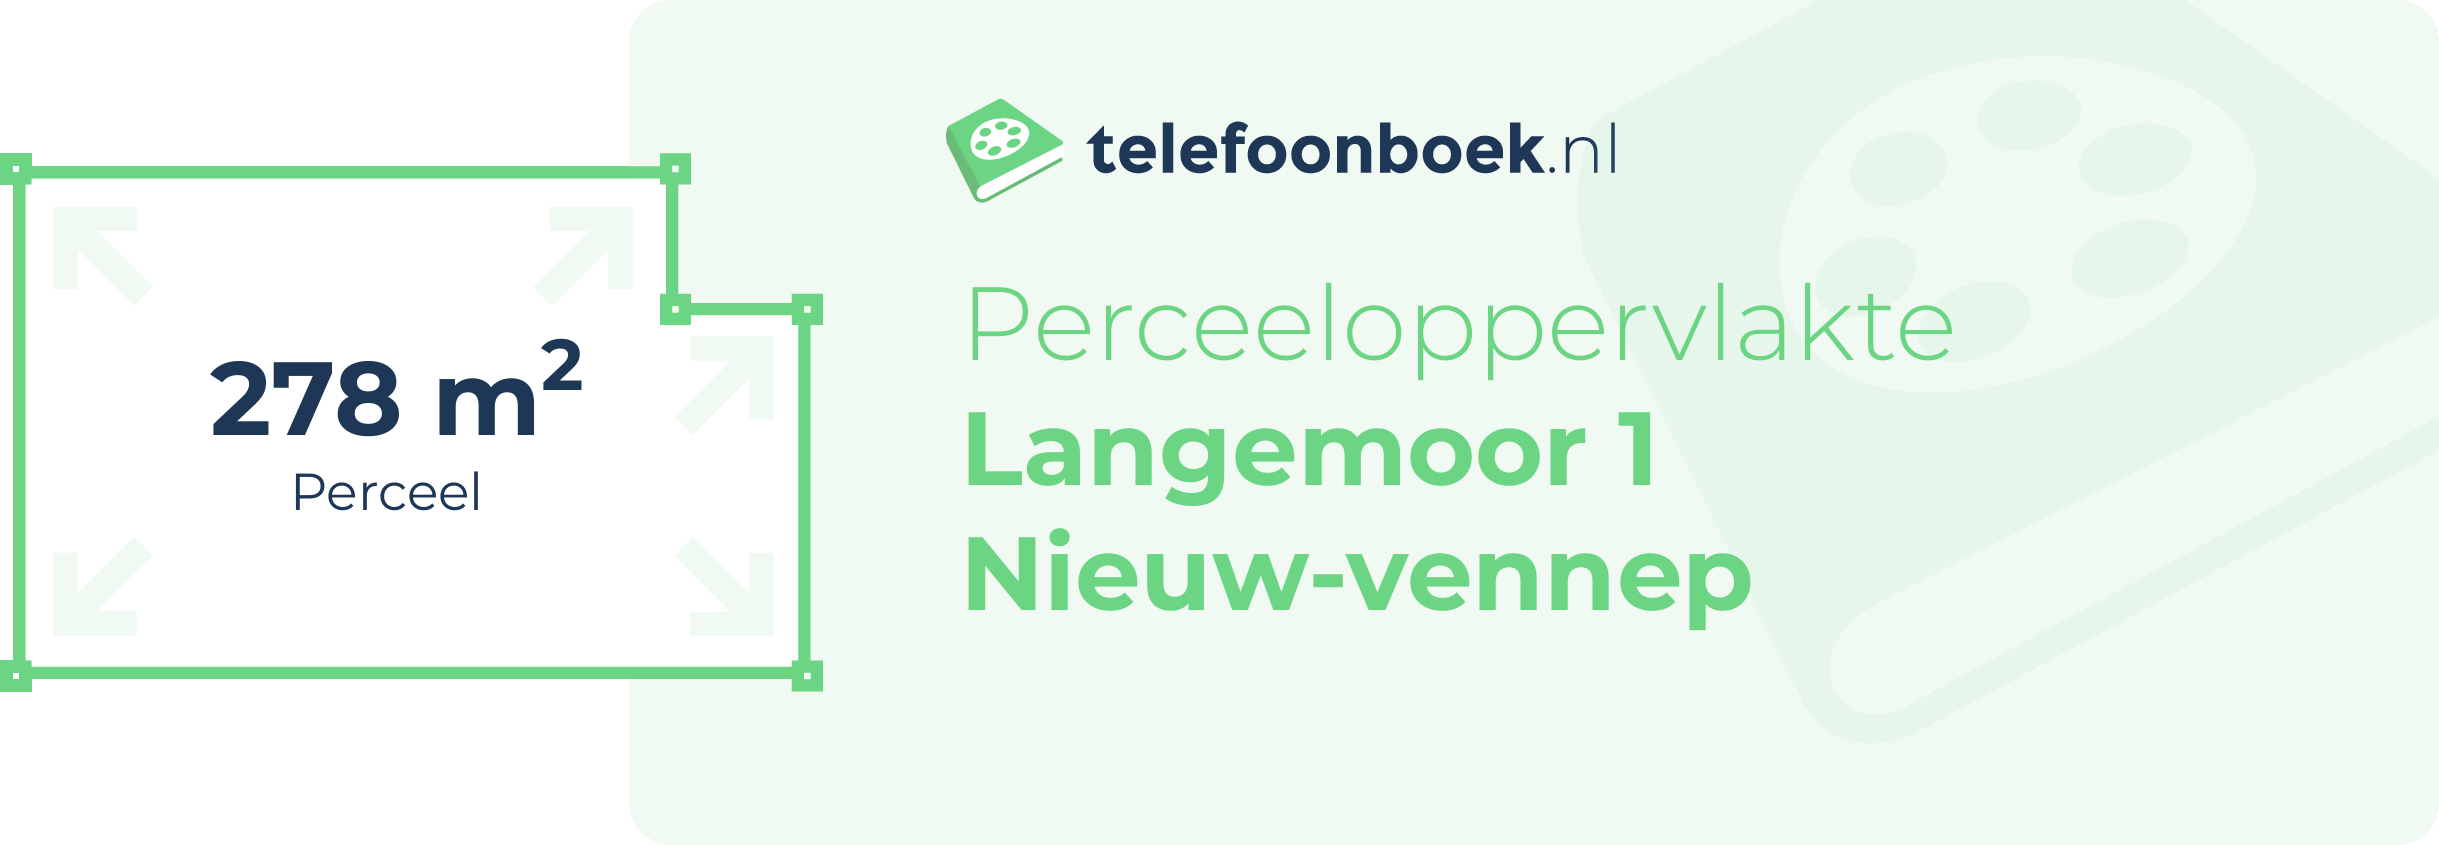 Perceeloppervlakte Langemoor 1 Nieuw-Vennep